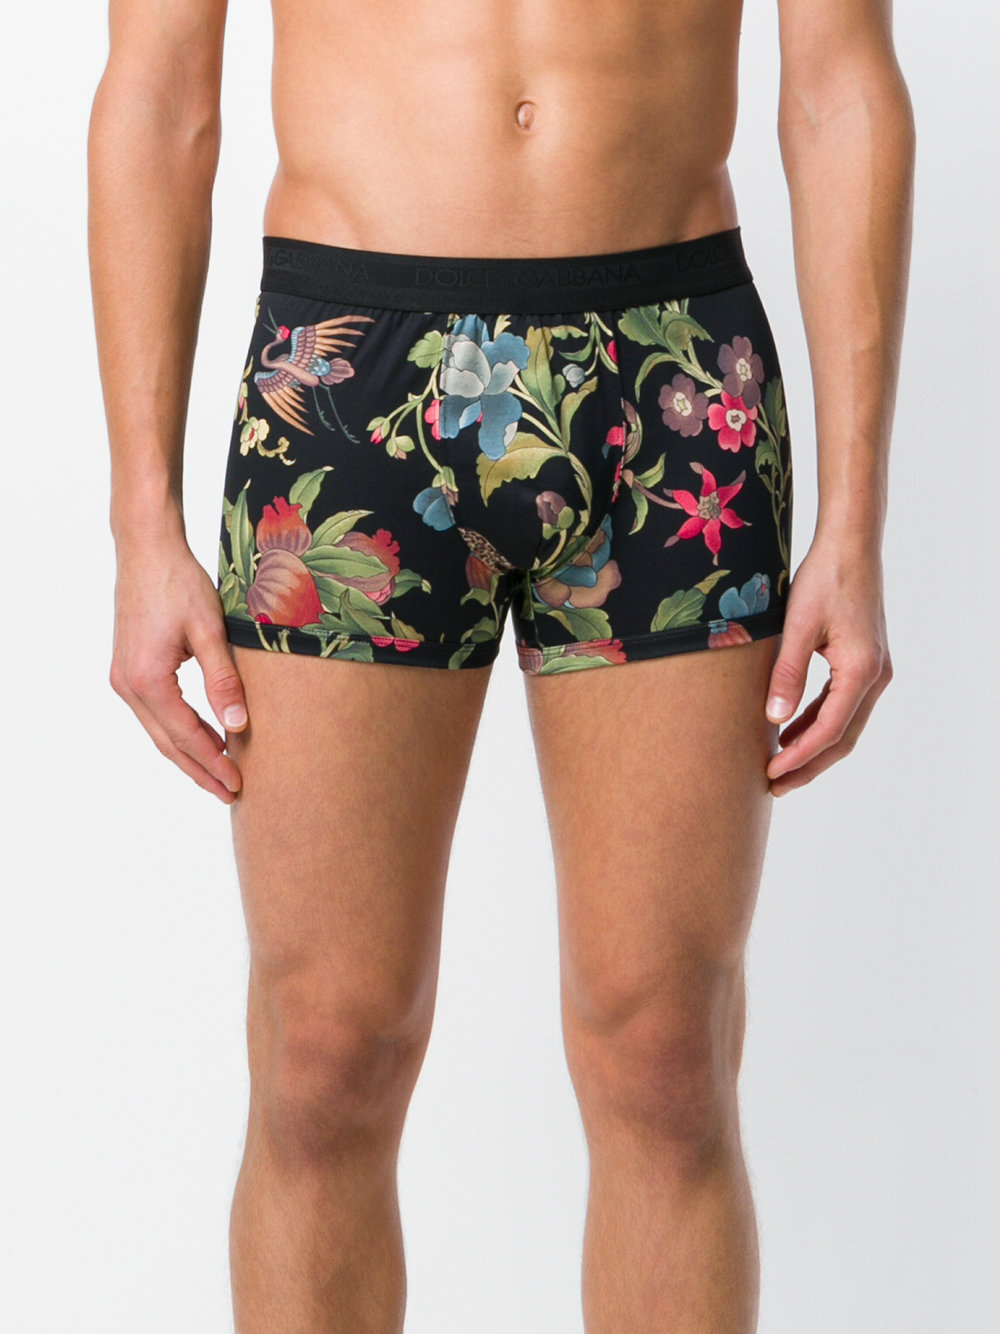 DOLCE & GABBANA UNDERWEAR, oriental print boxer shorts, 4 969 ₽